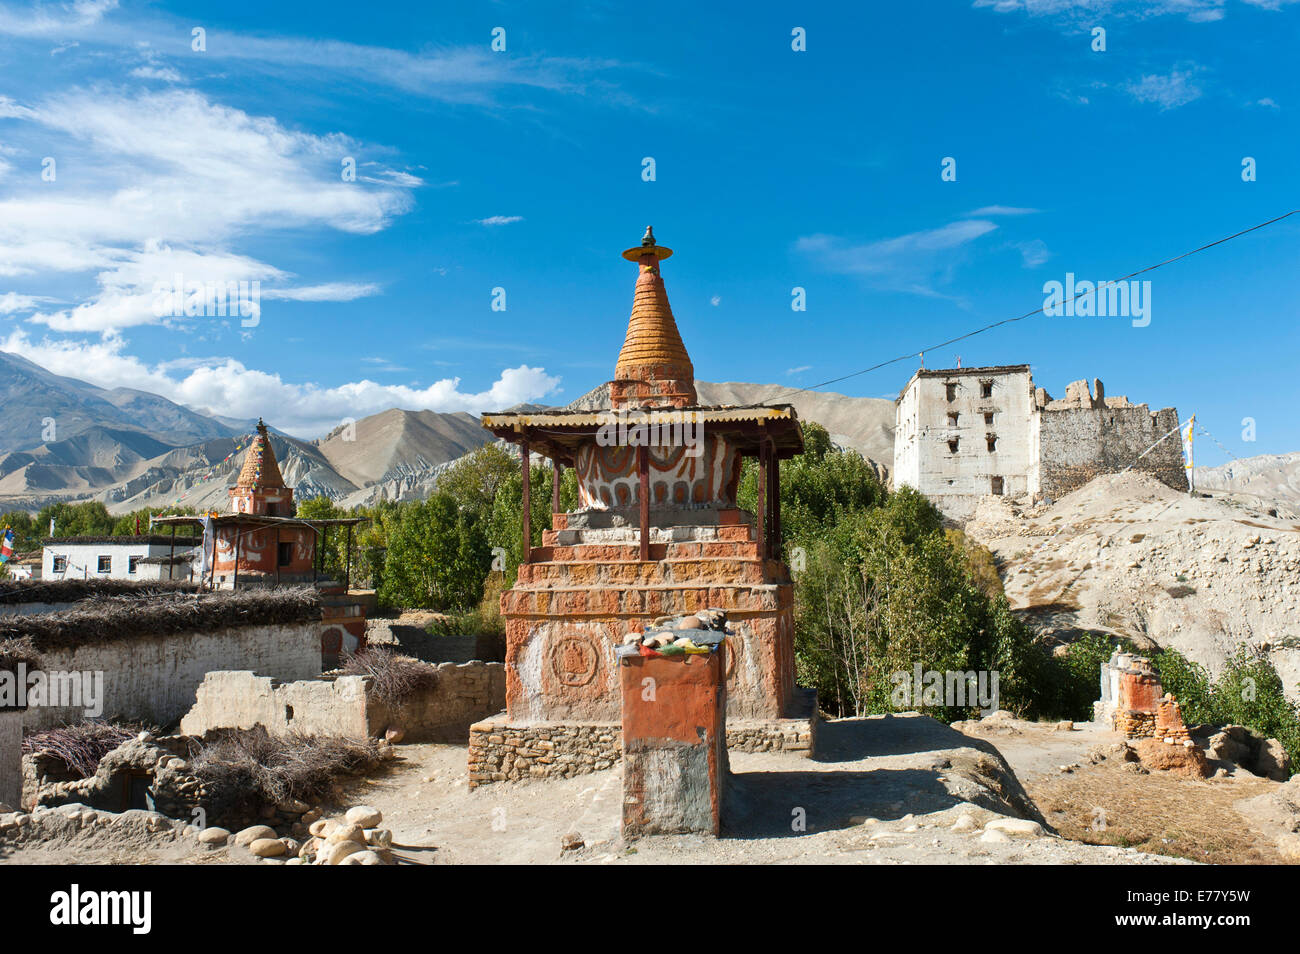 Le bouddhisme tibétain, stupa colorée, l'ancien Palais Royal à l'arrière, blanc, ruines Dzong architecture, Charang, District de Mustang Banque D'Images